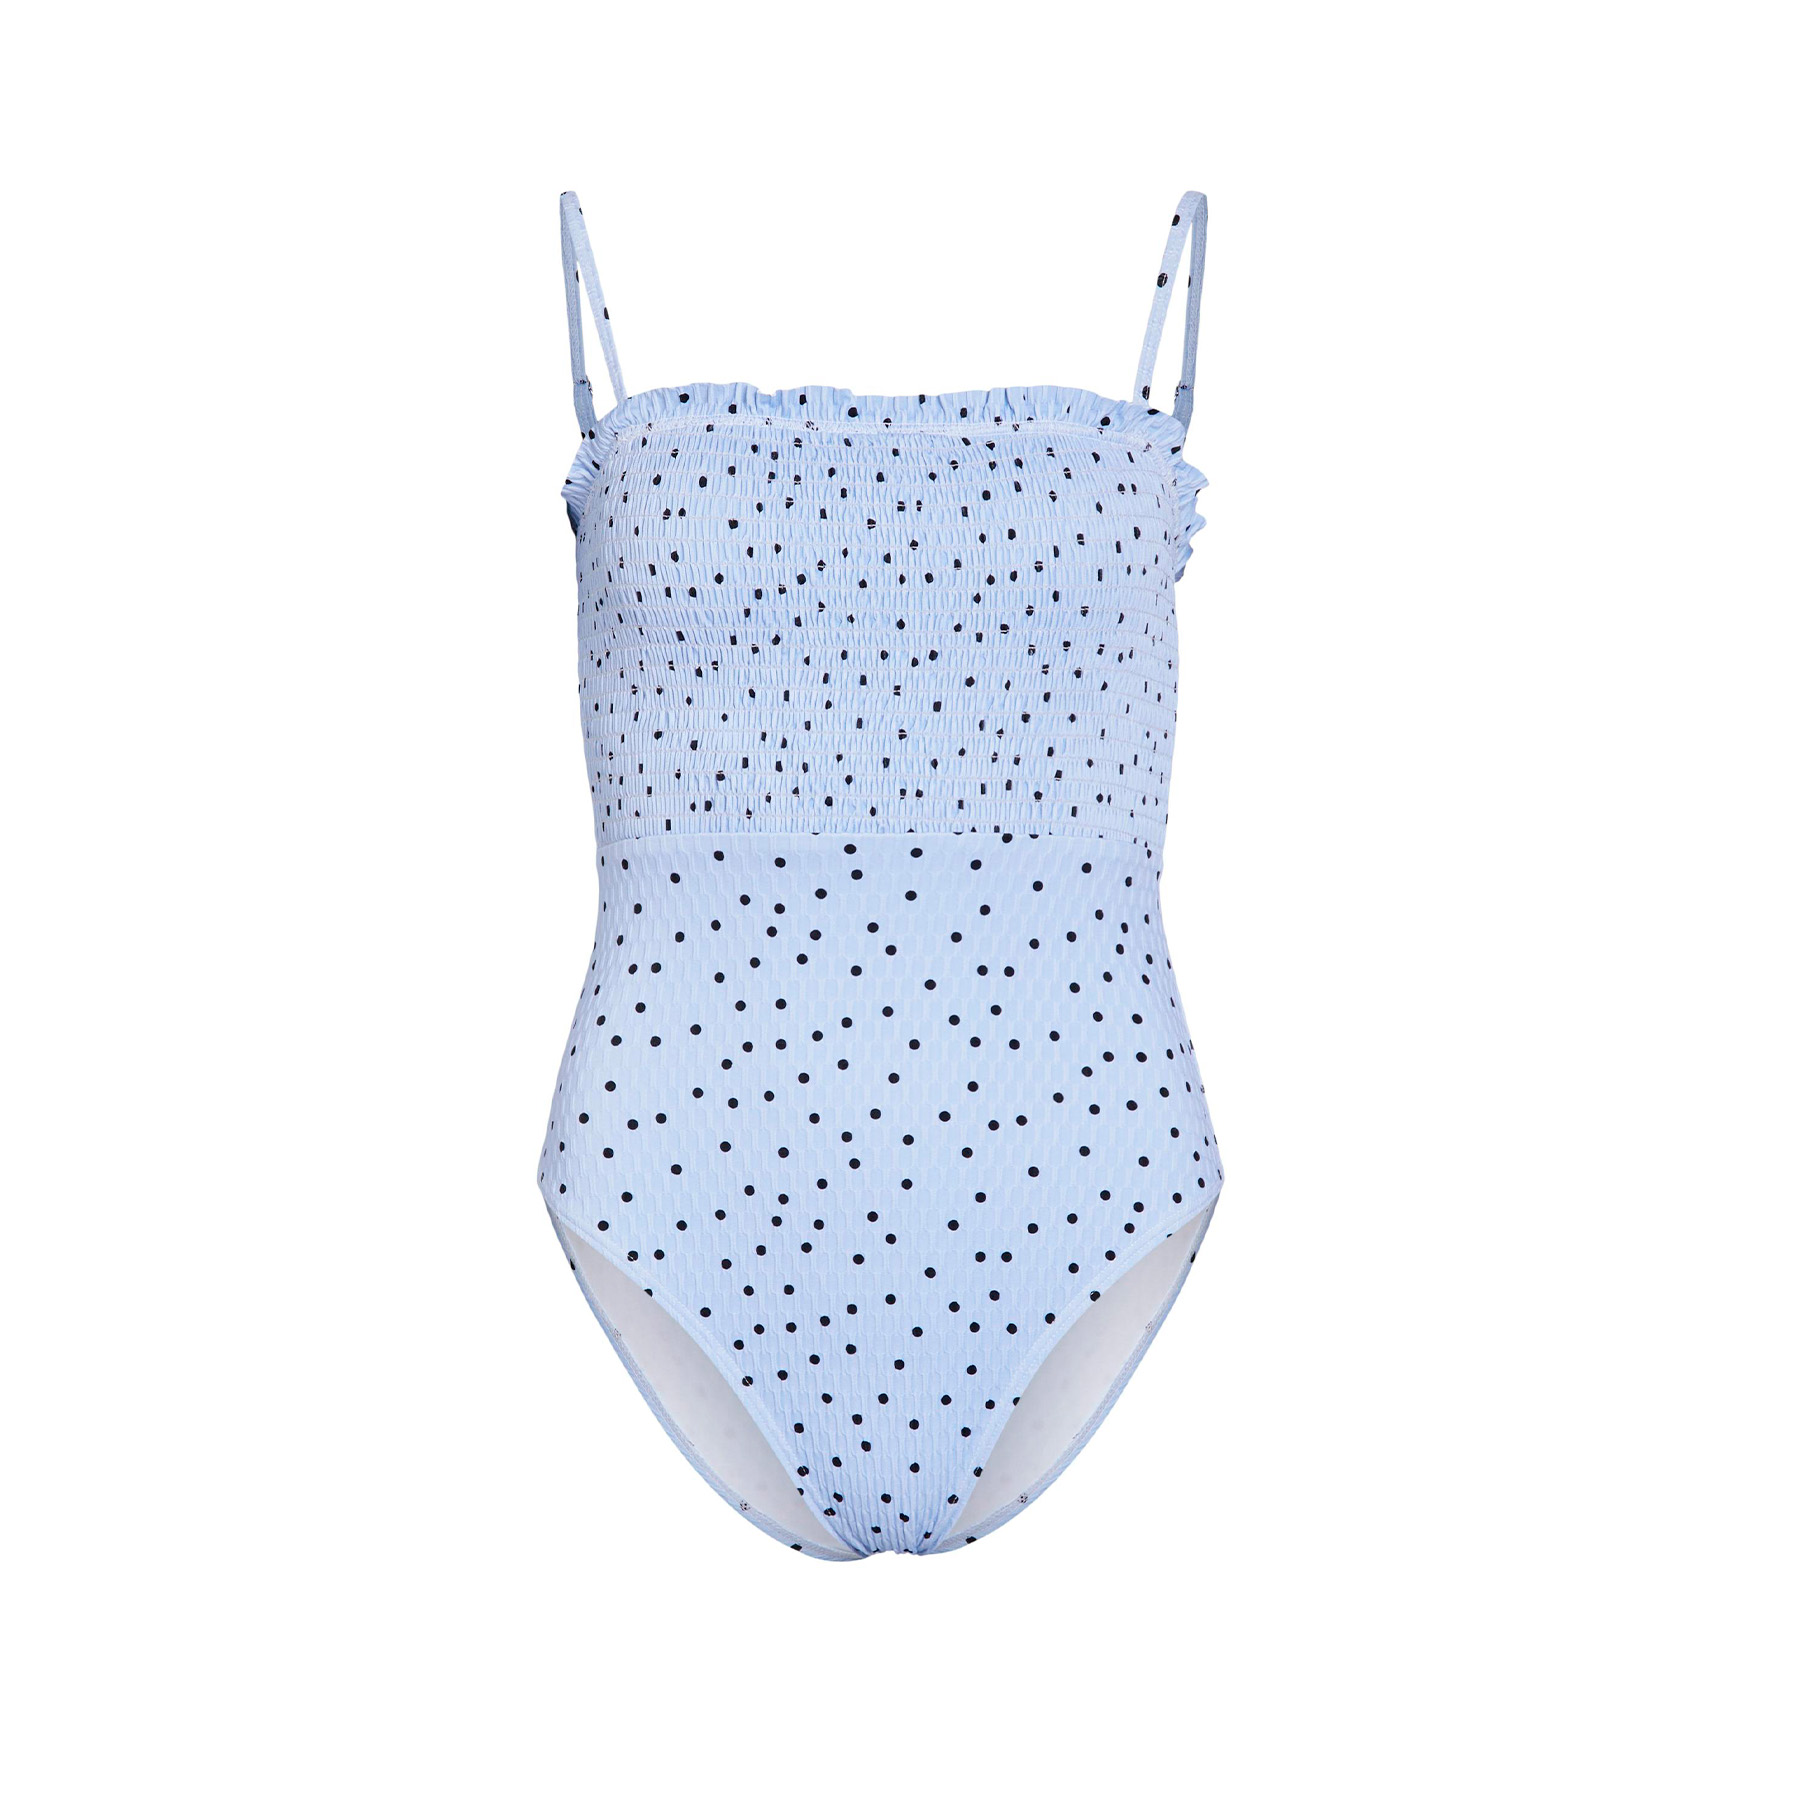 Billede af Object - Objcarla swimsuit - Swimwear & Badetøj - Blå - XL